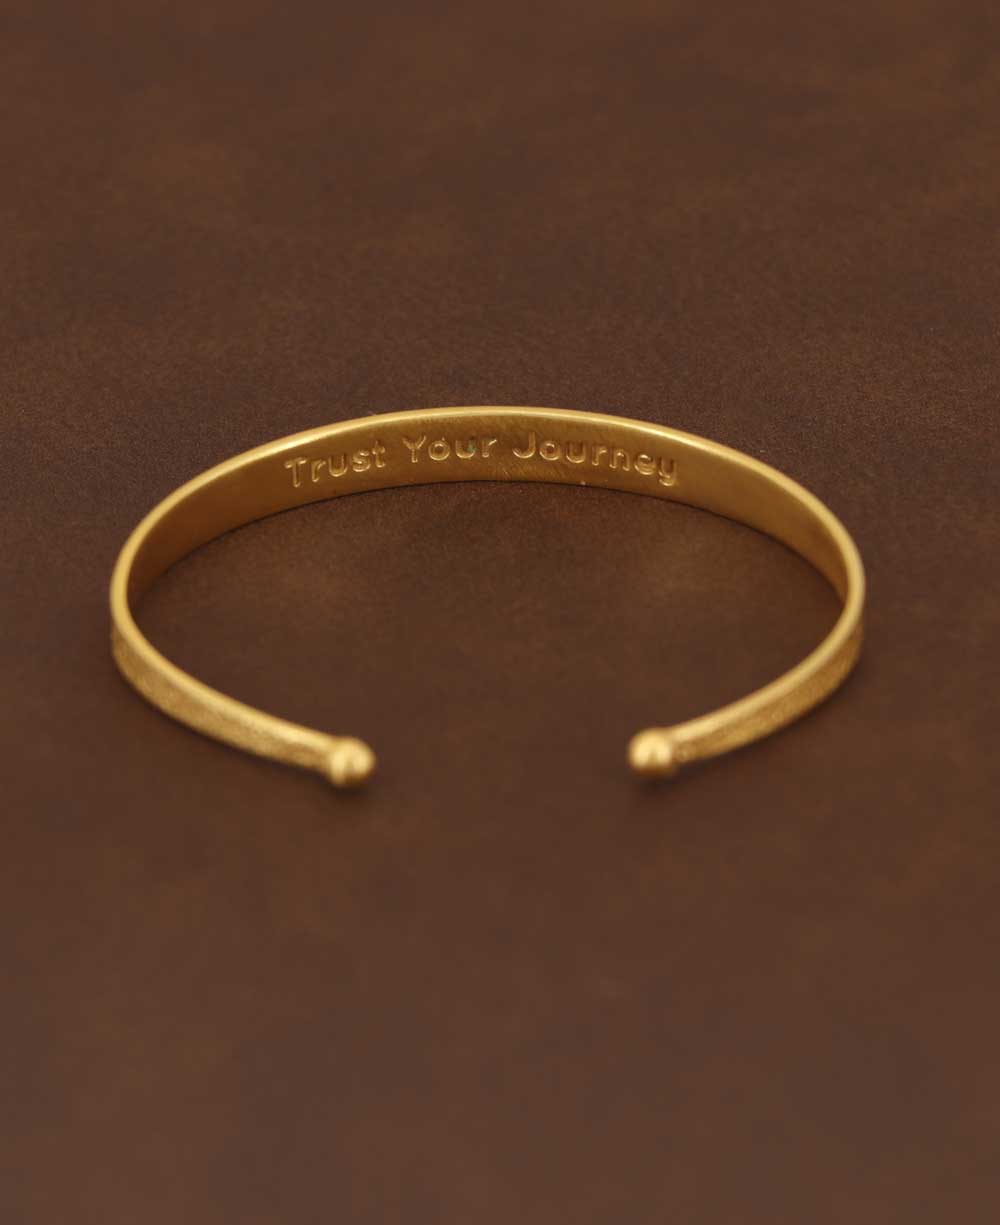 Moon Phase Trust Your Journey Gold Plated Adjustable Bracelet - Bracelets